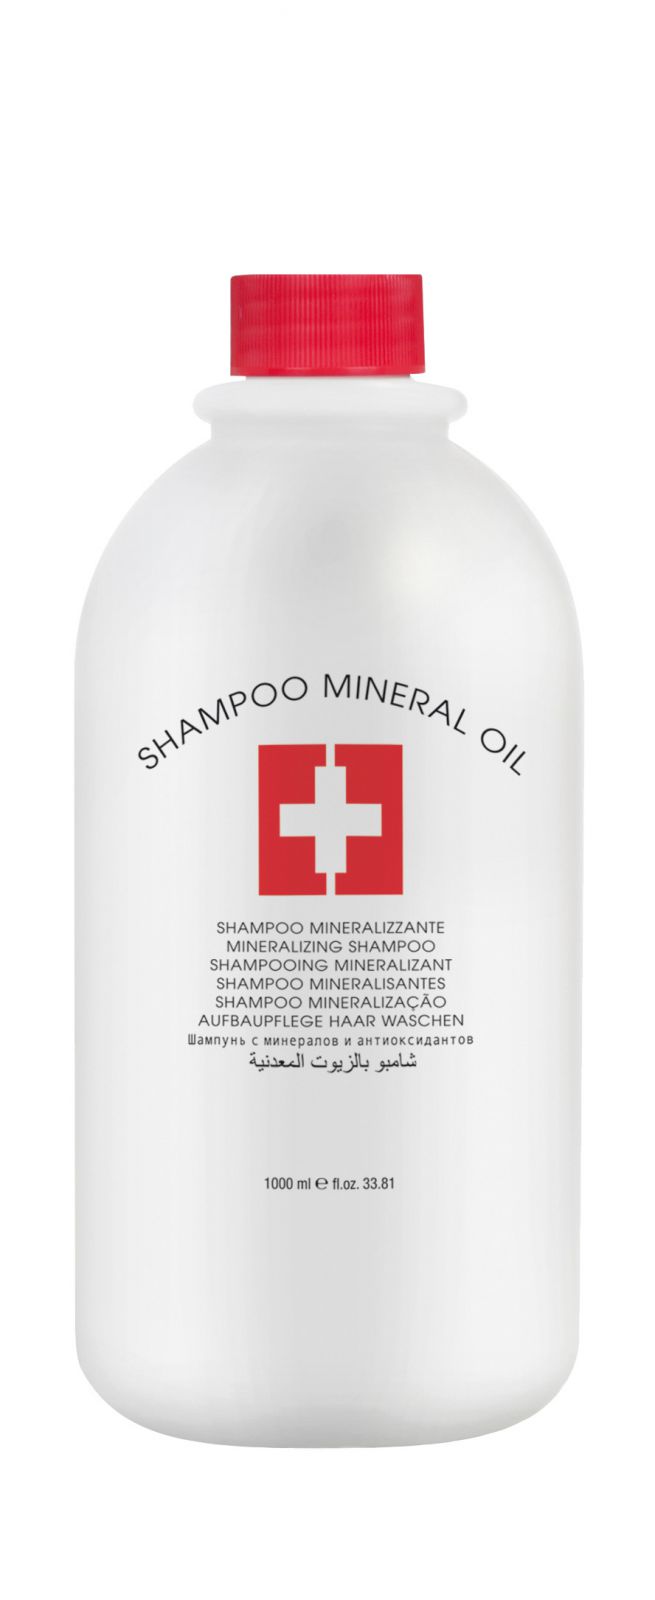 Lovien Shampoo Mineral Oil 1000ml - šampon na vlasy - Vlasový šampon pro narušené vlasy.